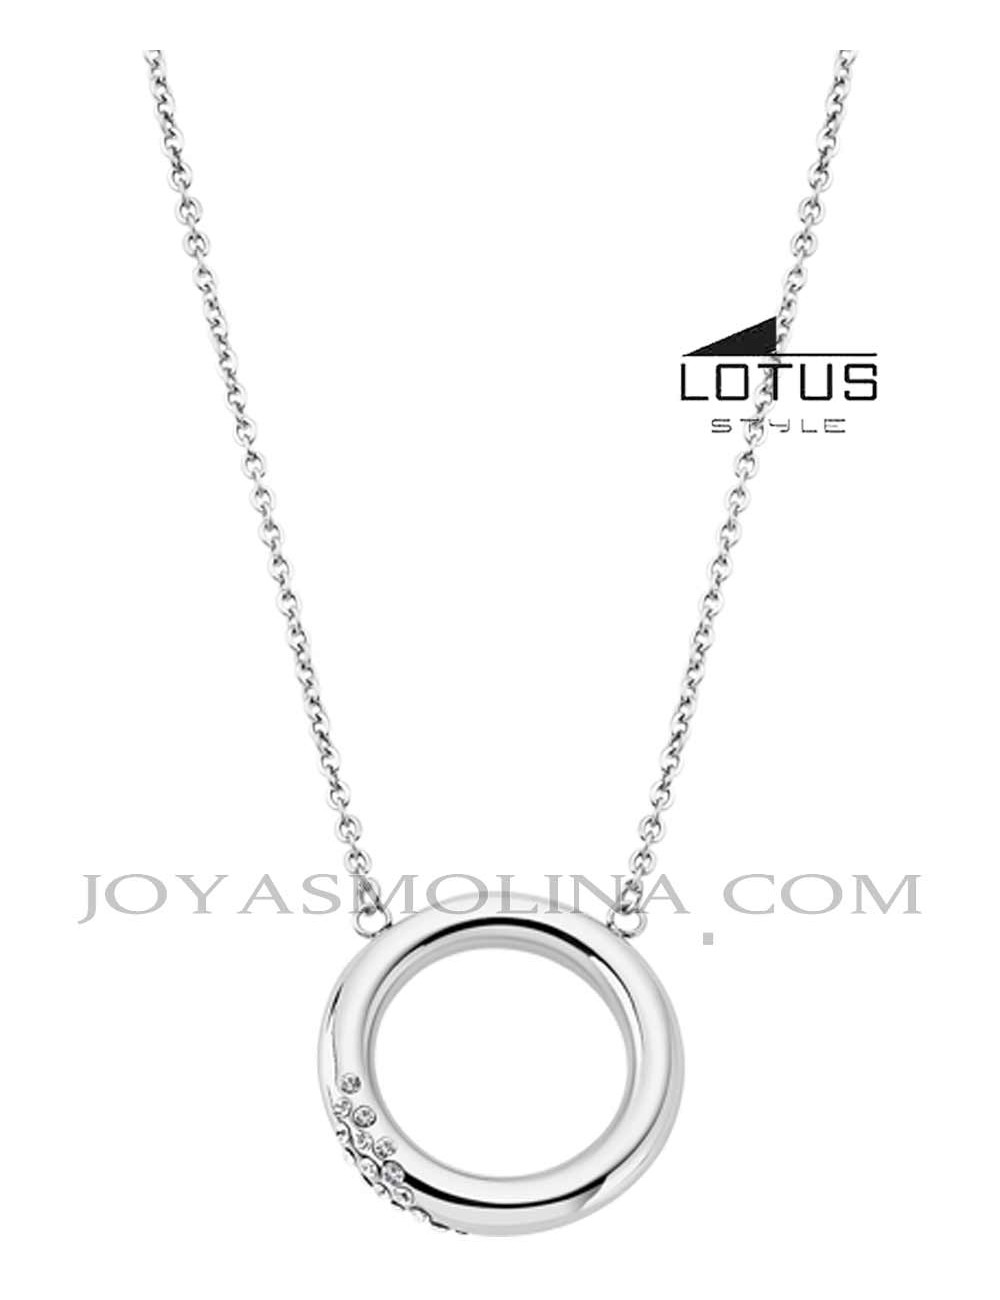 Gargantilla Lotus acero círculo circonitas LS1947-1-1